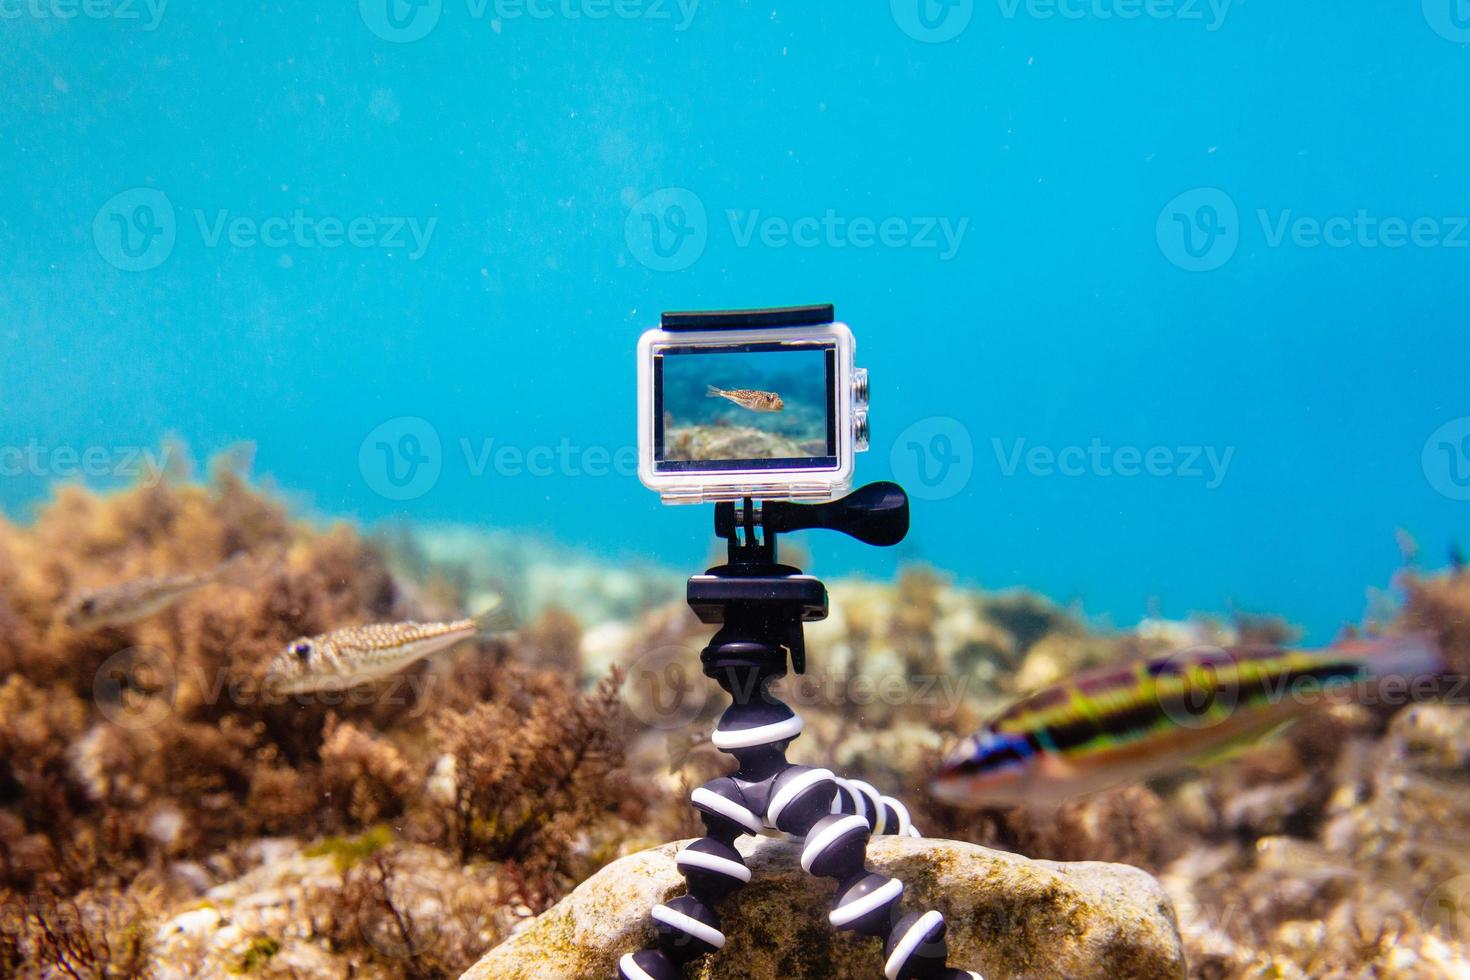 utilizzando action-camera in scatola impermeabile per fare foto e video sott'acqua